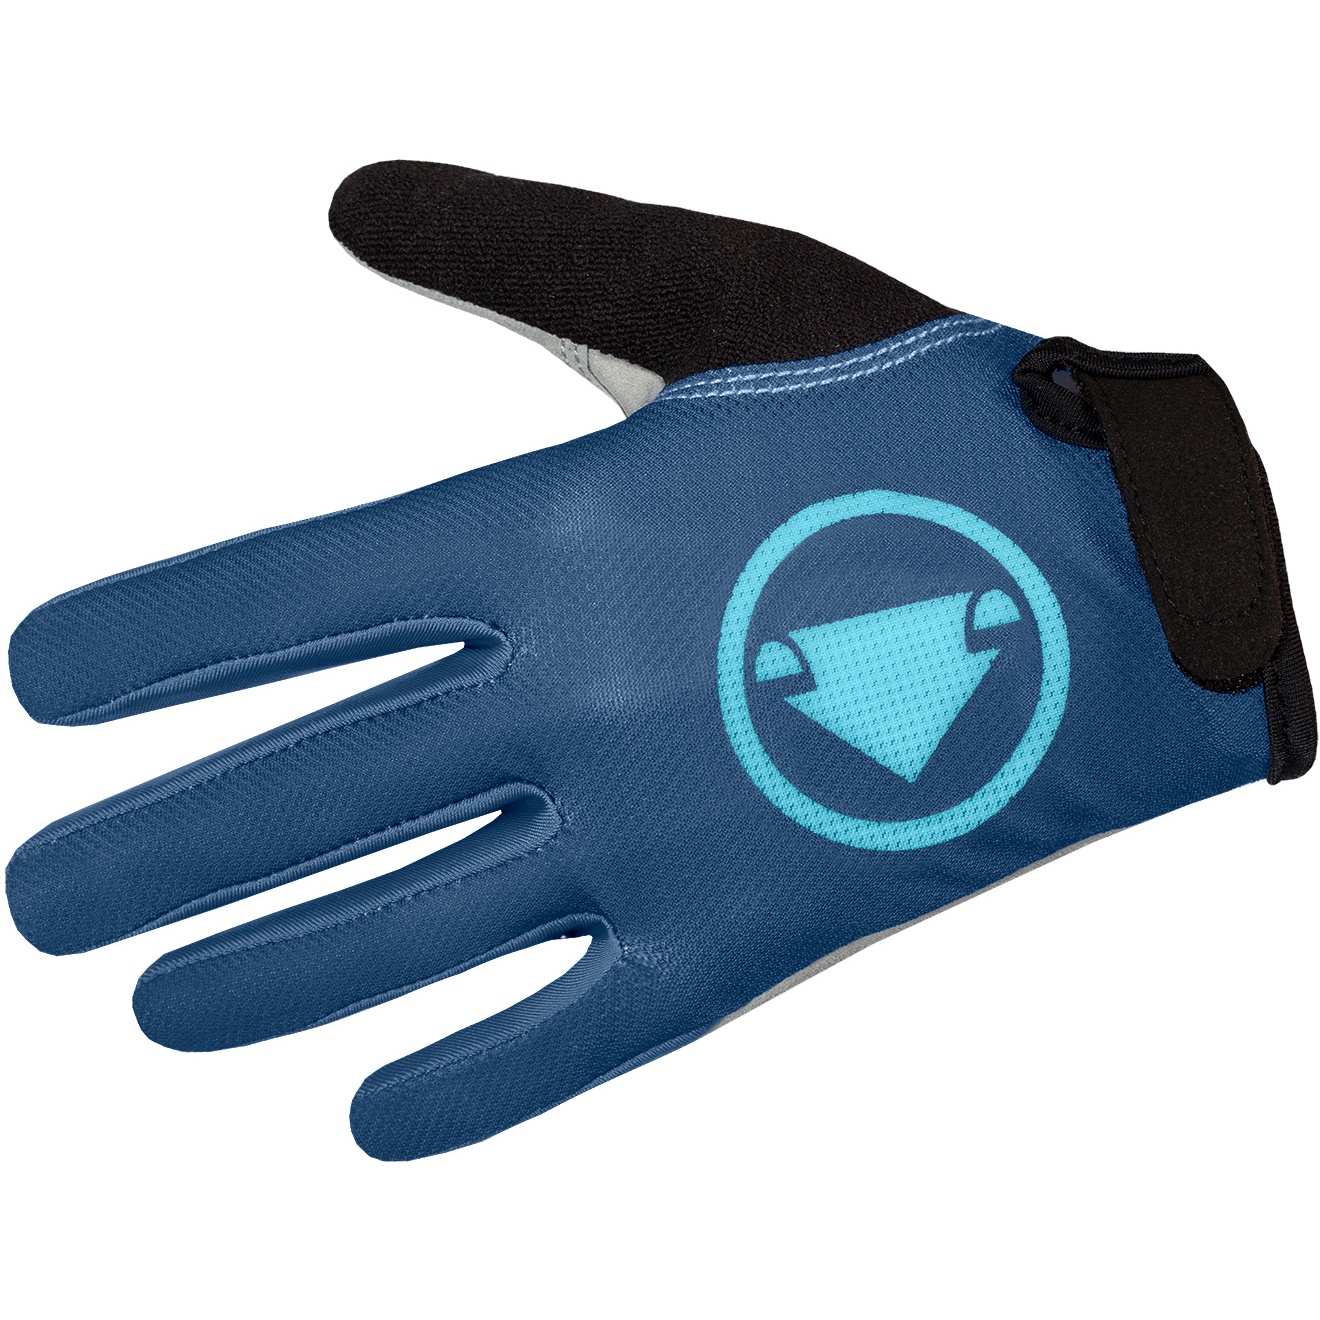 Produktbild von Endura Hummvee Handschuhe Kinder - blueberry